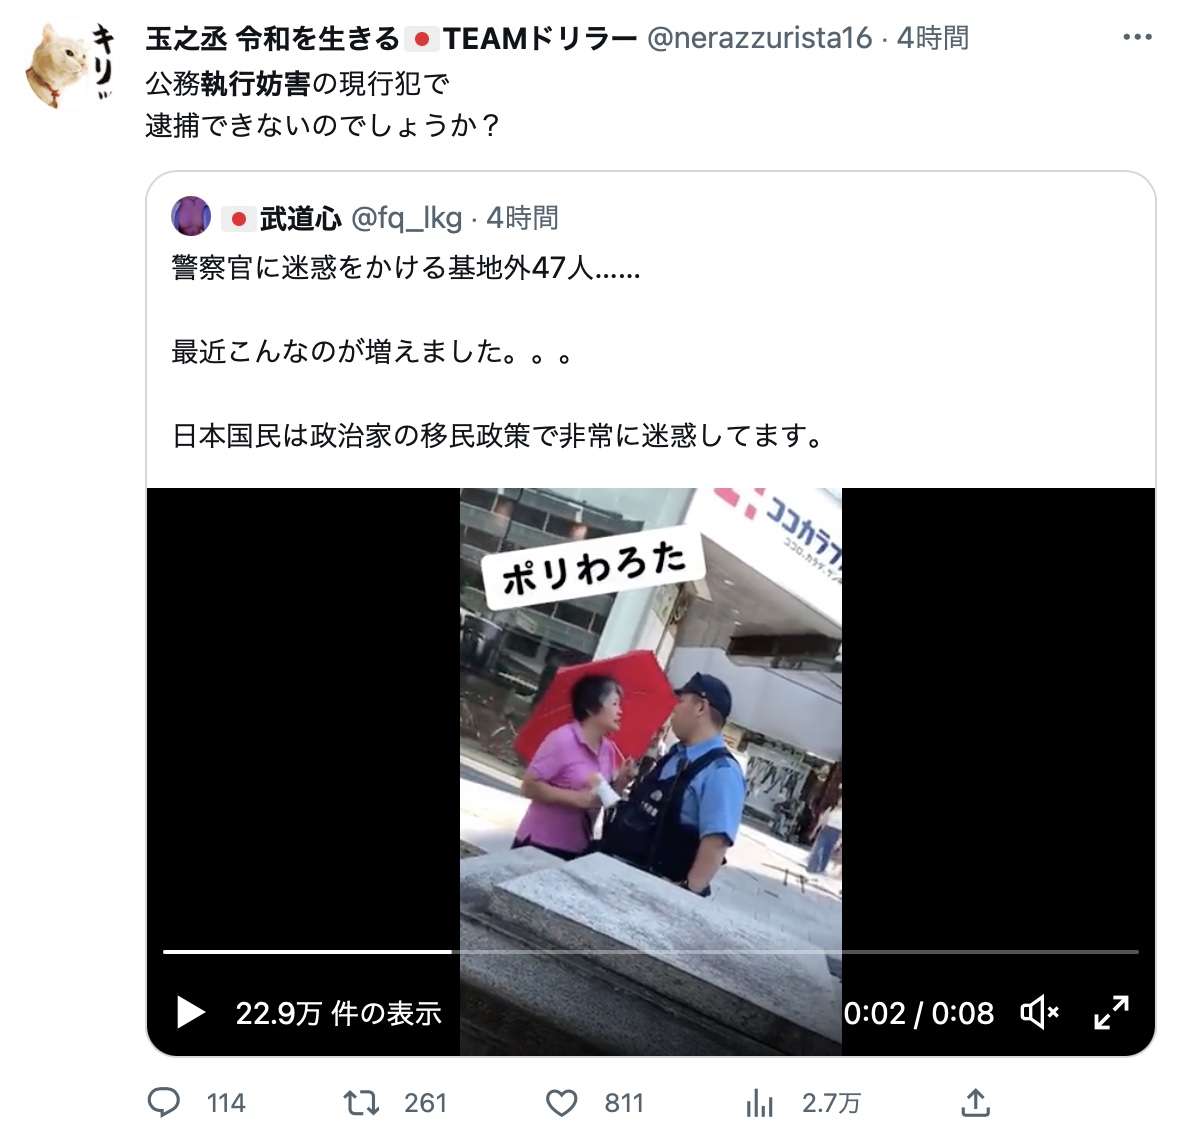 中国人女性が警官に怒鳴り散らす動画が「ポリわろた」どころではなく公務執行妨害だと話題に